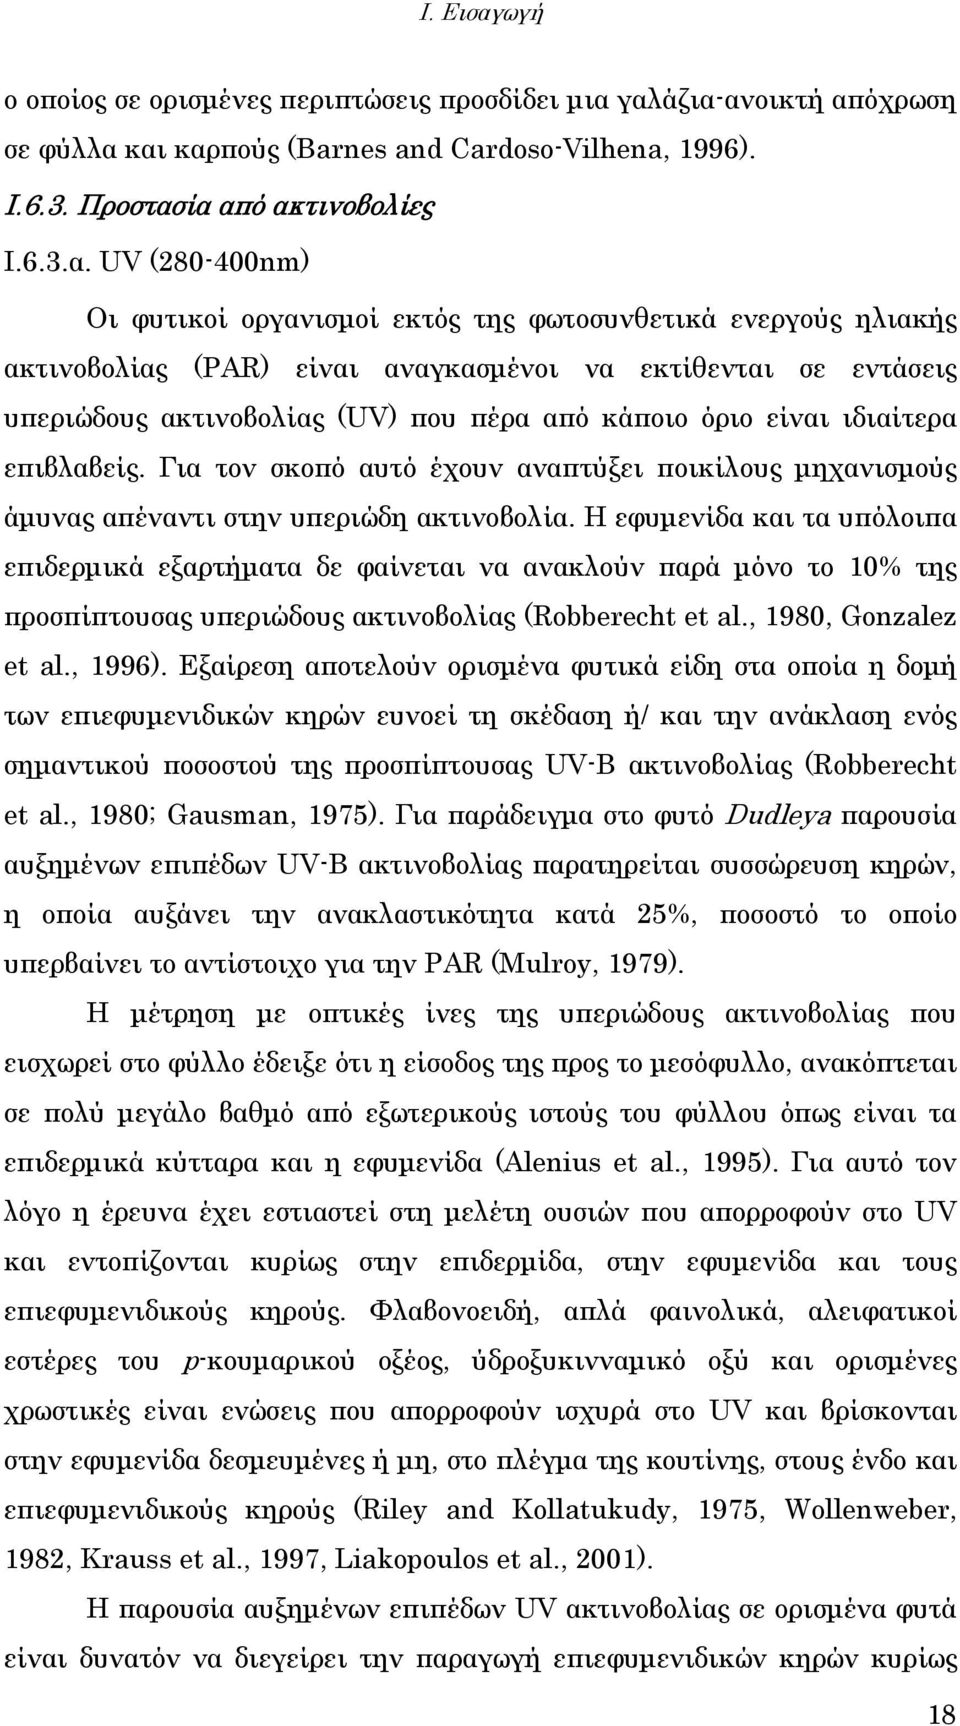 γαλάζια-ανοικτή απόχρωση σε φύλλα και καρπούς (Barnes and Cardoso-Vilhena, 1996). Ι.6.3. Προστασία από ακτινοβολίες Ι.6.3.α. UV (280-400nm) Οι φυτικοί οργανισµοί εκτός της φωτοσυνθετικά ενεργούς